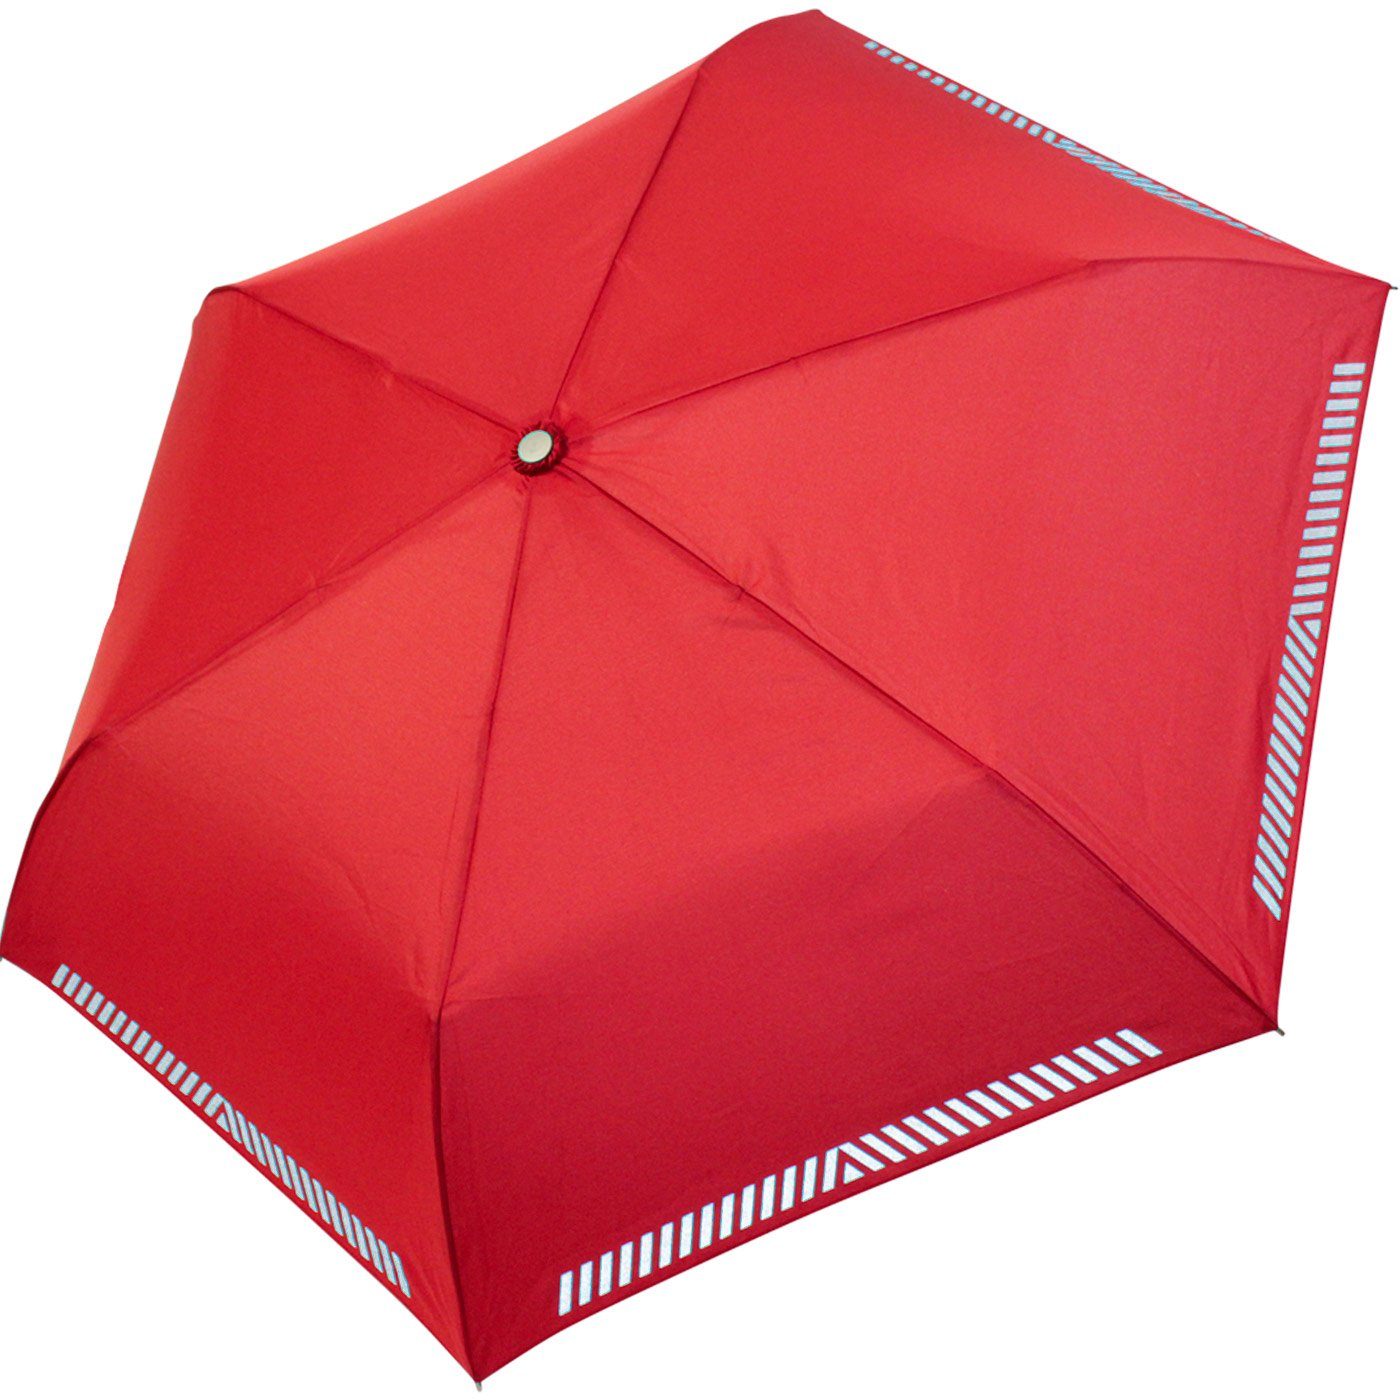 Kinderschirm reflektierend Mini Safety iX-brella rot extra Taschenregenschirm leicht, Reflex